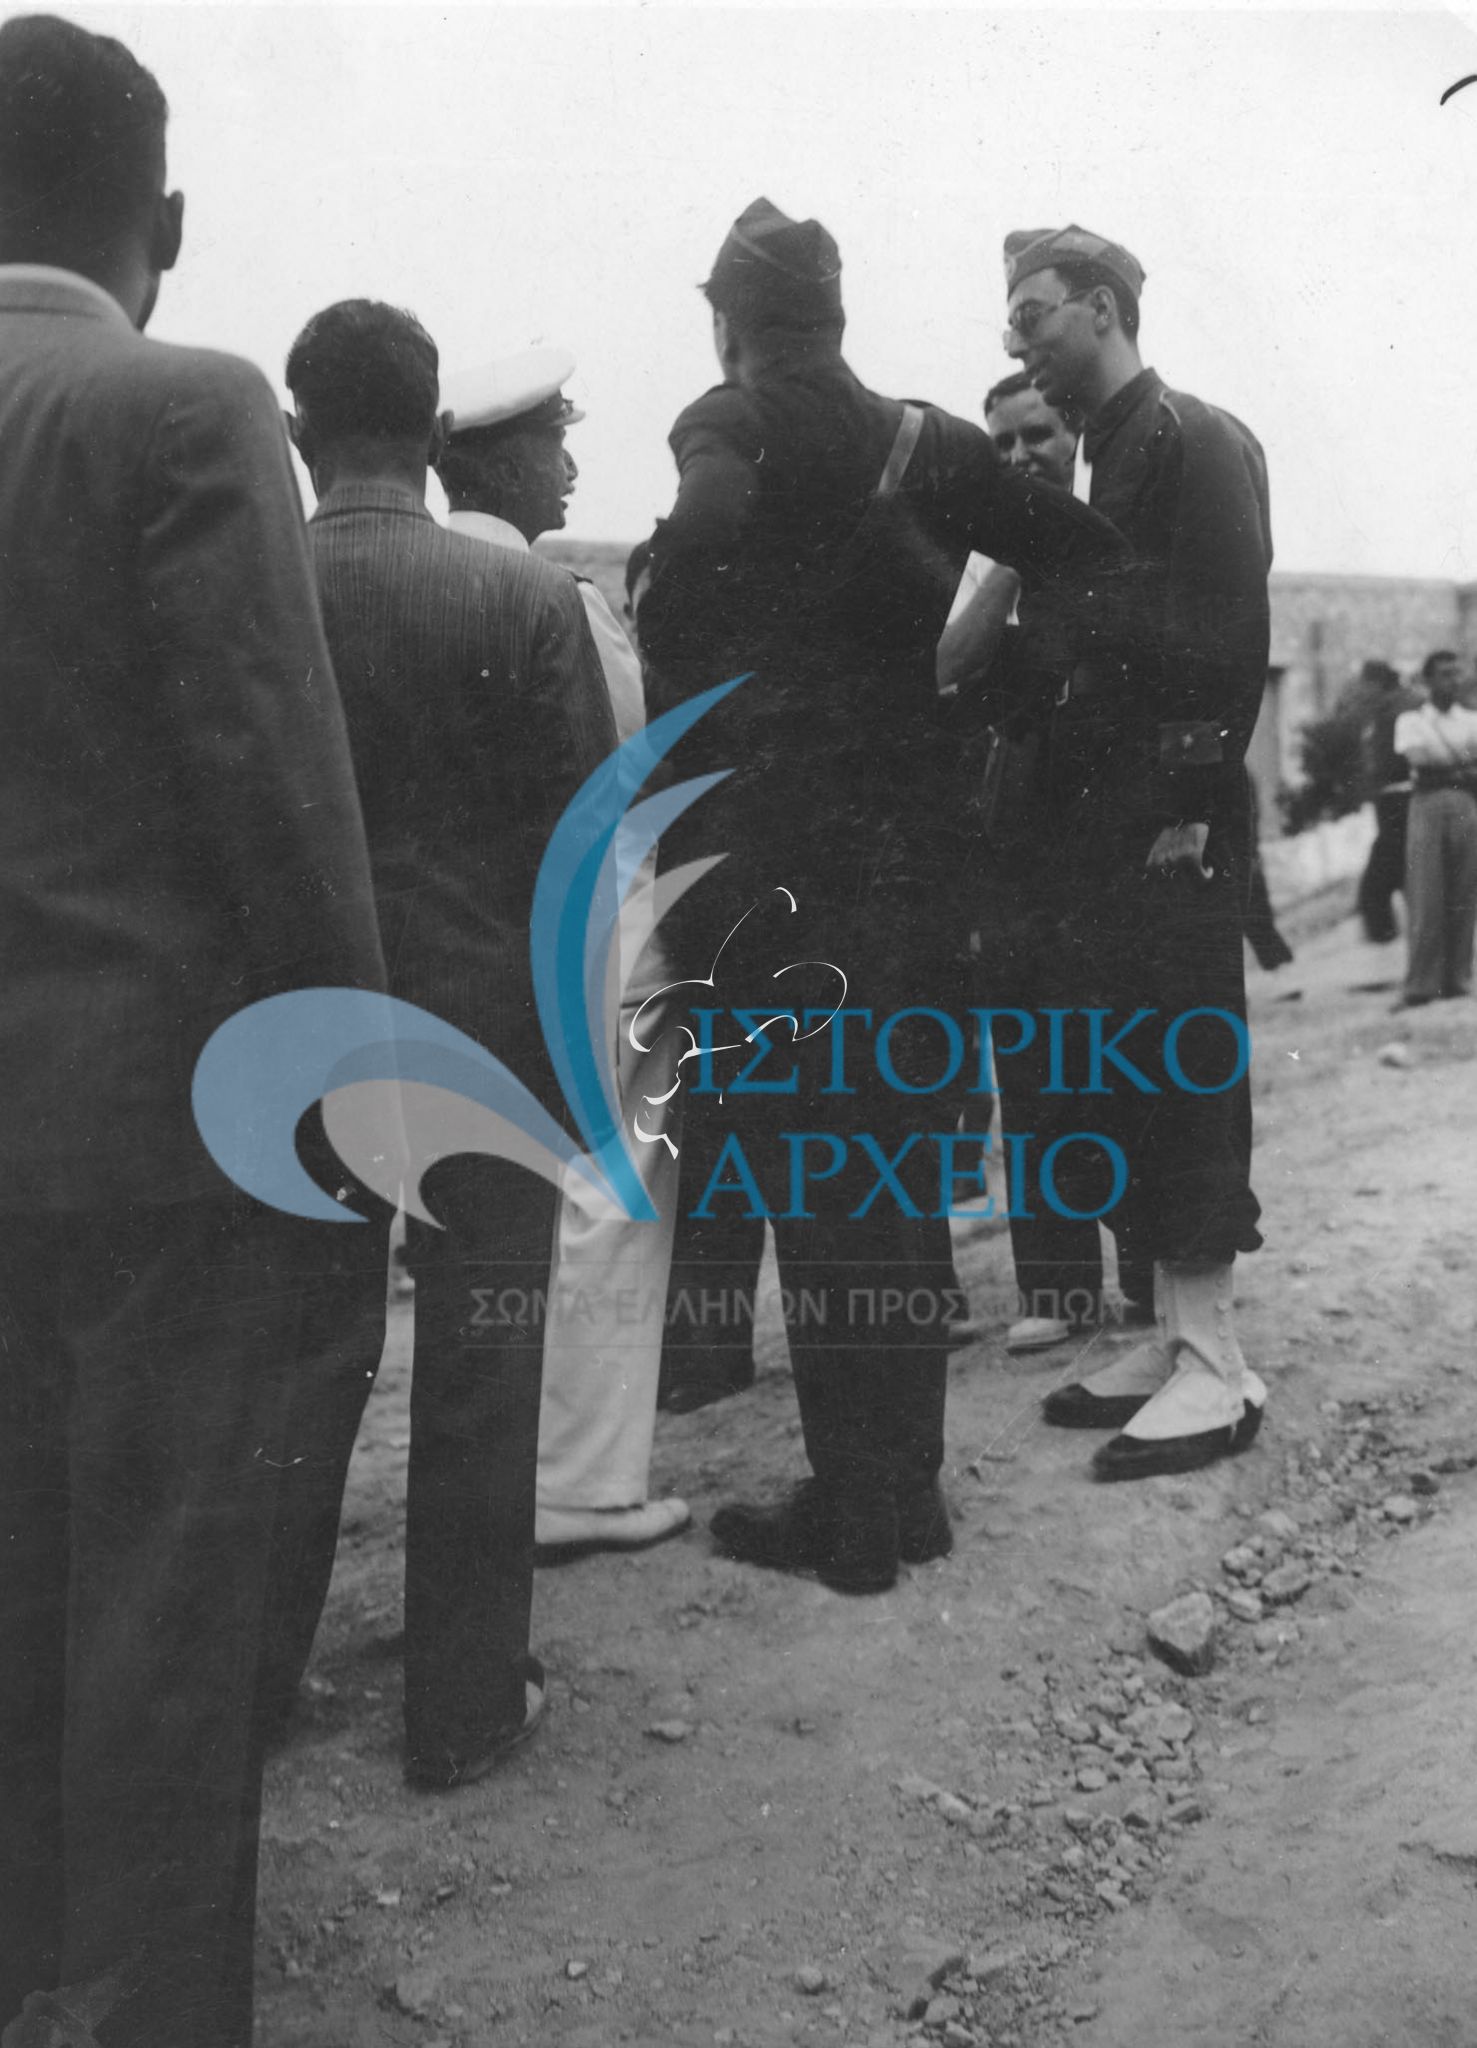 Ο Γενικός Έφορος Μ. Σοφιανός συνομιλεί με τον αρχηγό των φαλαγγιτών Α. Κανελλόπουλο κατά την τελετή διάλυσης του ΣΕΠ και την αναγκαστική συγχώνευση με την Εθνική Οργάνωση Νεολαίας το 1938.